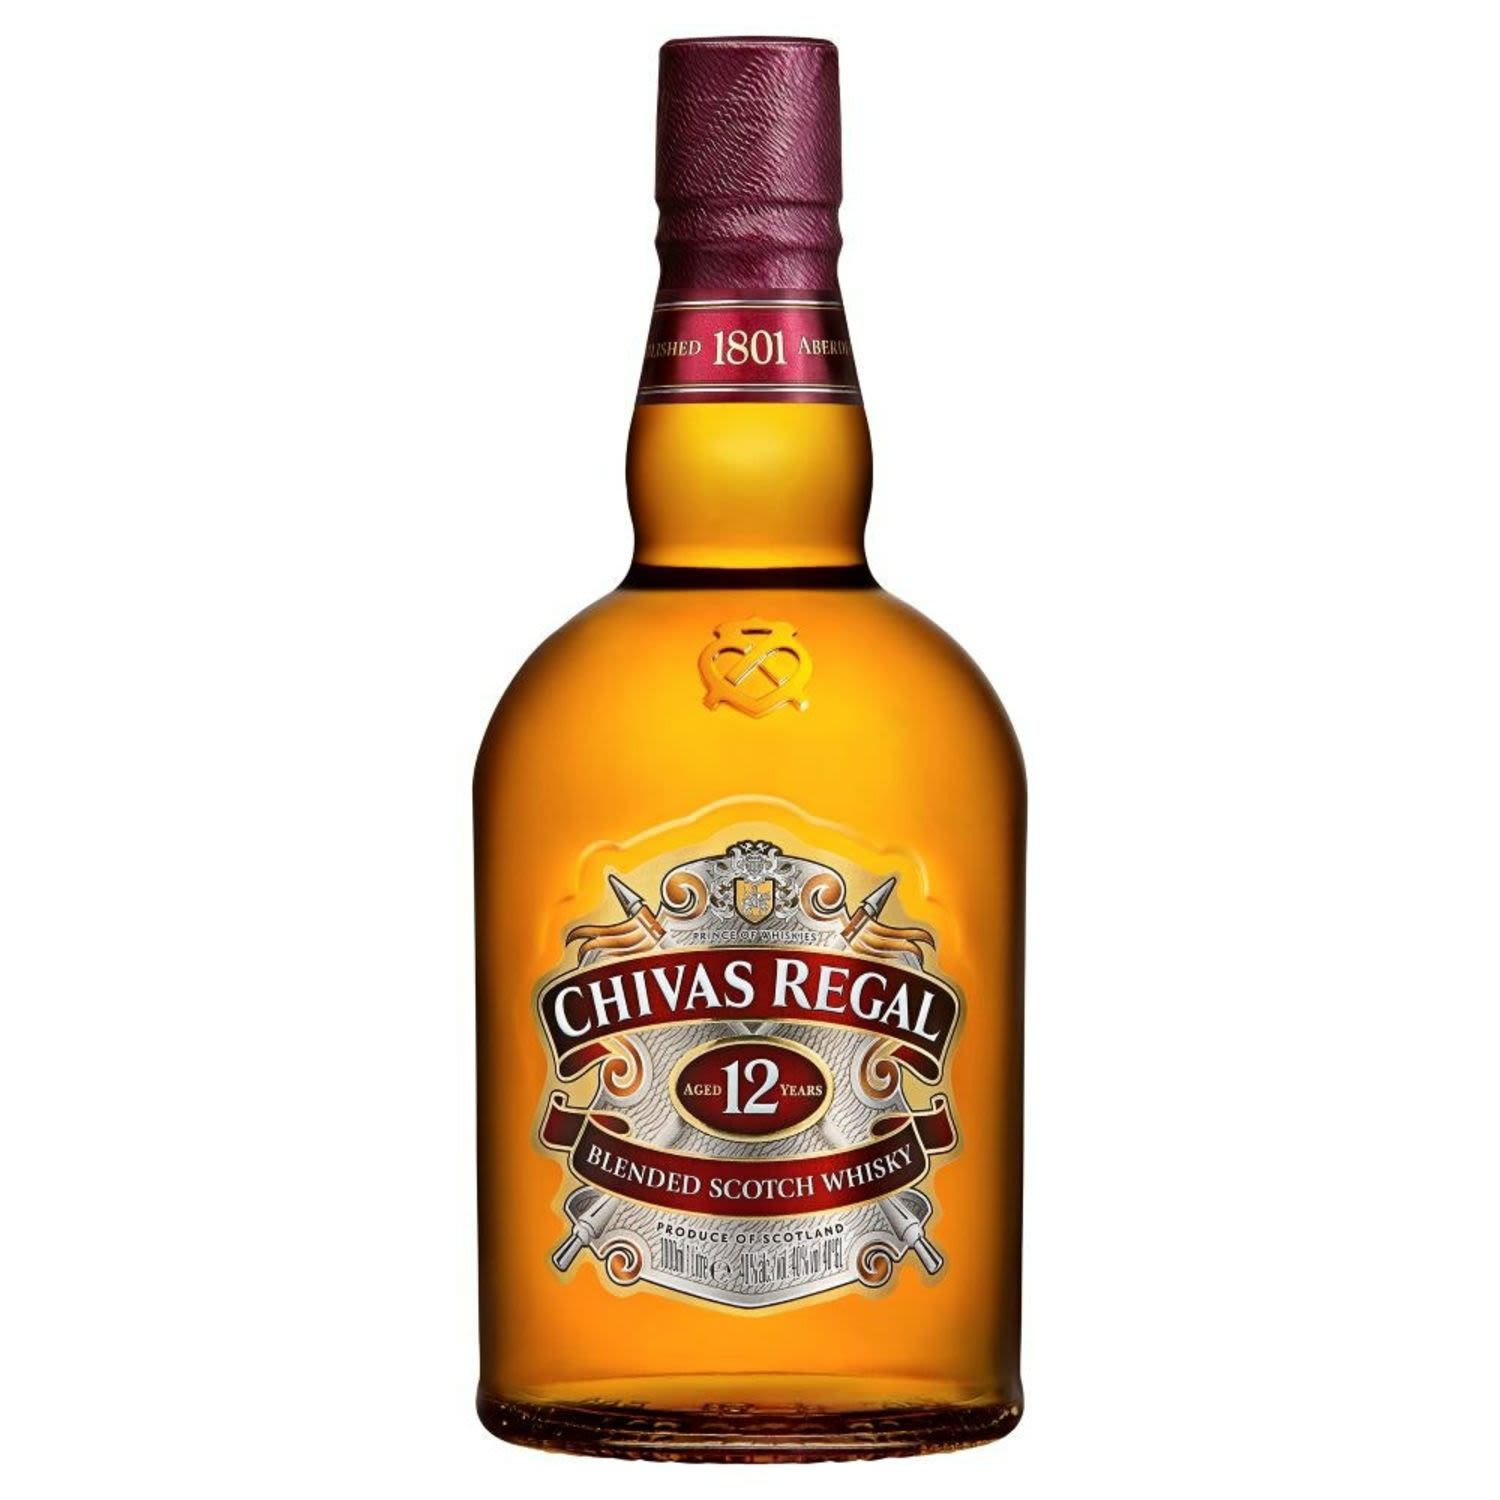 Chivas Regal 12 Year Old Blended Scotch Whisky 700mL<br /> <br />Alcohol Volume: 40.00%<br /><br />Pack Format: Bottle<br /><br />Standard Drinks: 22.1<br /><br />Pack Type: Bottle<br /><br />Country of Origin: Scotland<br />